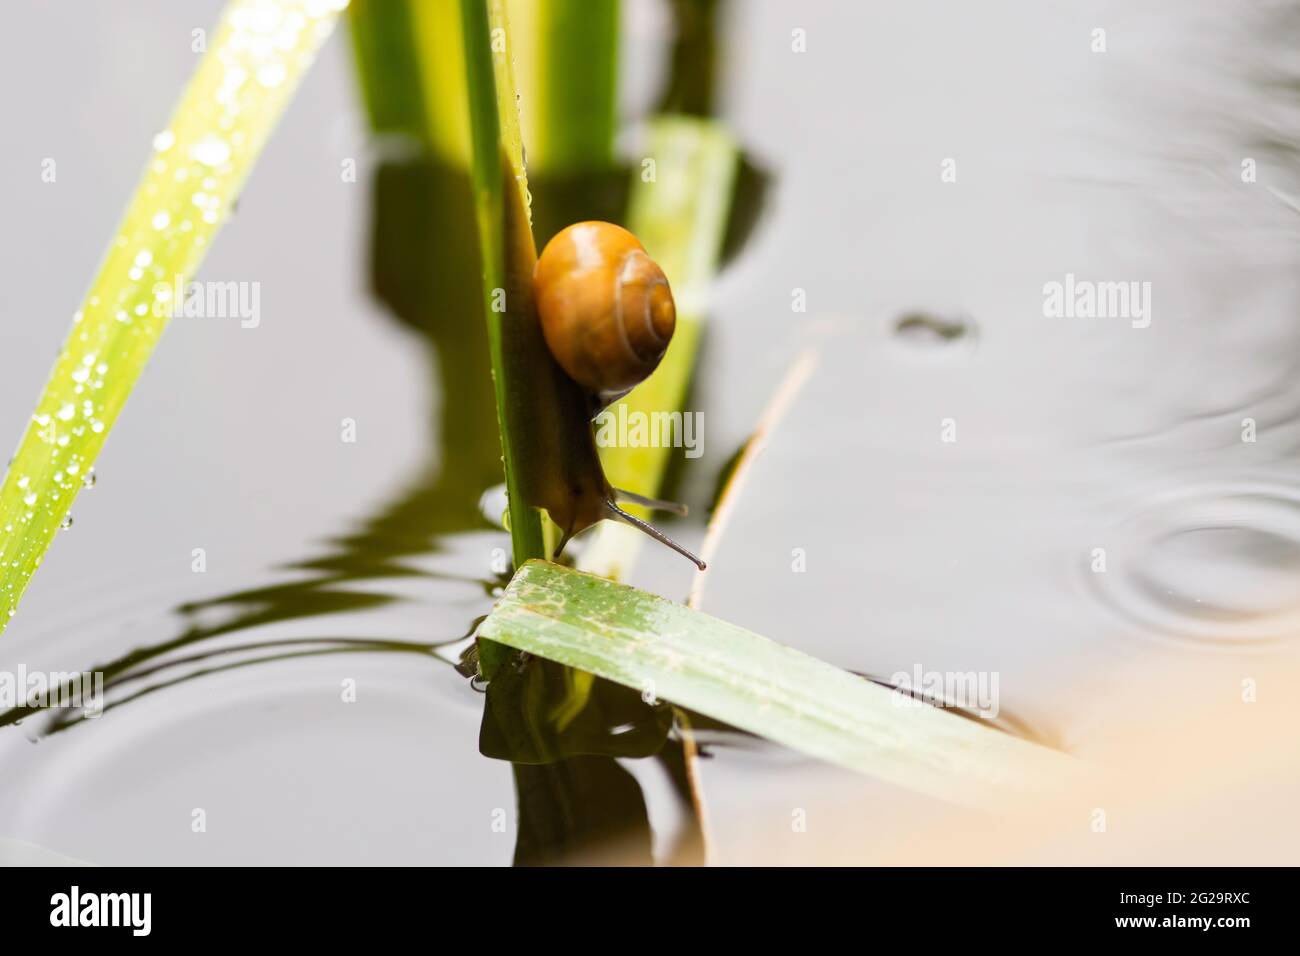 Codorniz o Cepaea nemoralis escalando una planta de agua en un estanque Foto de stock